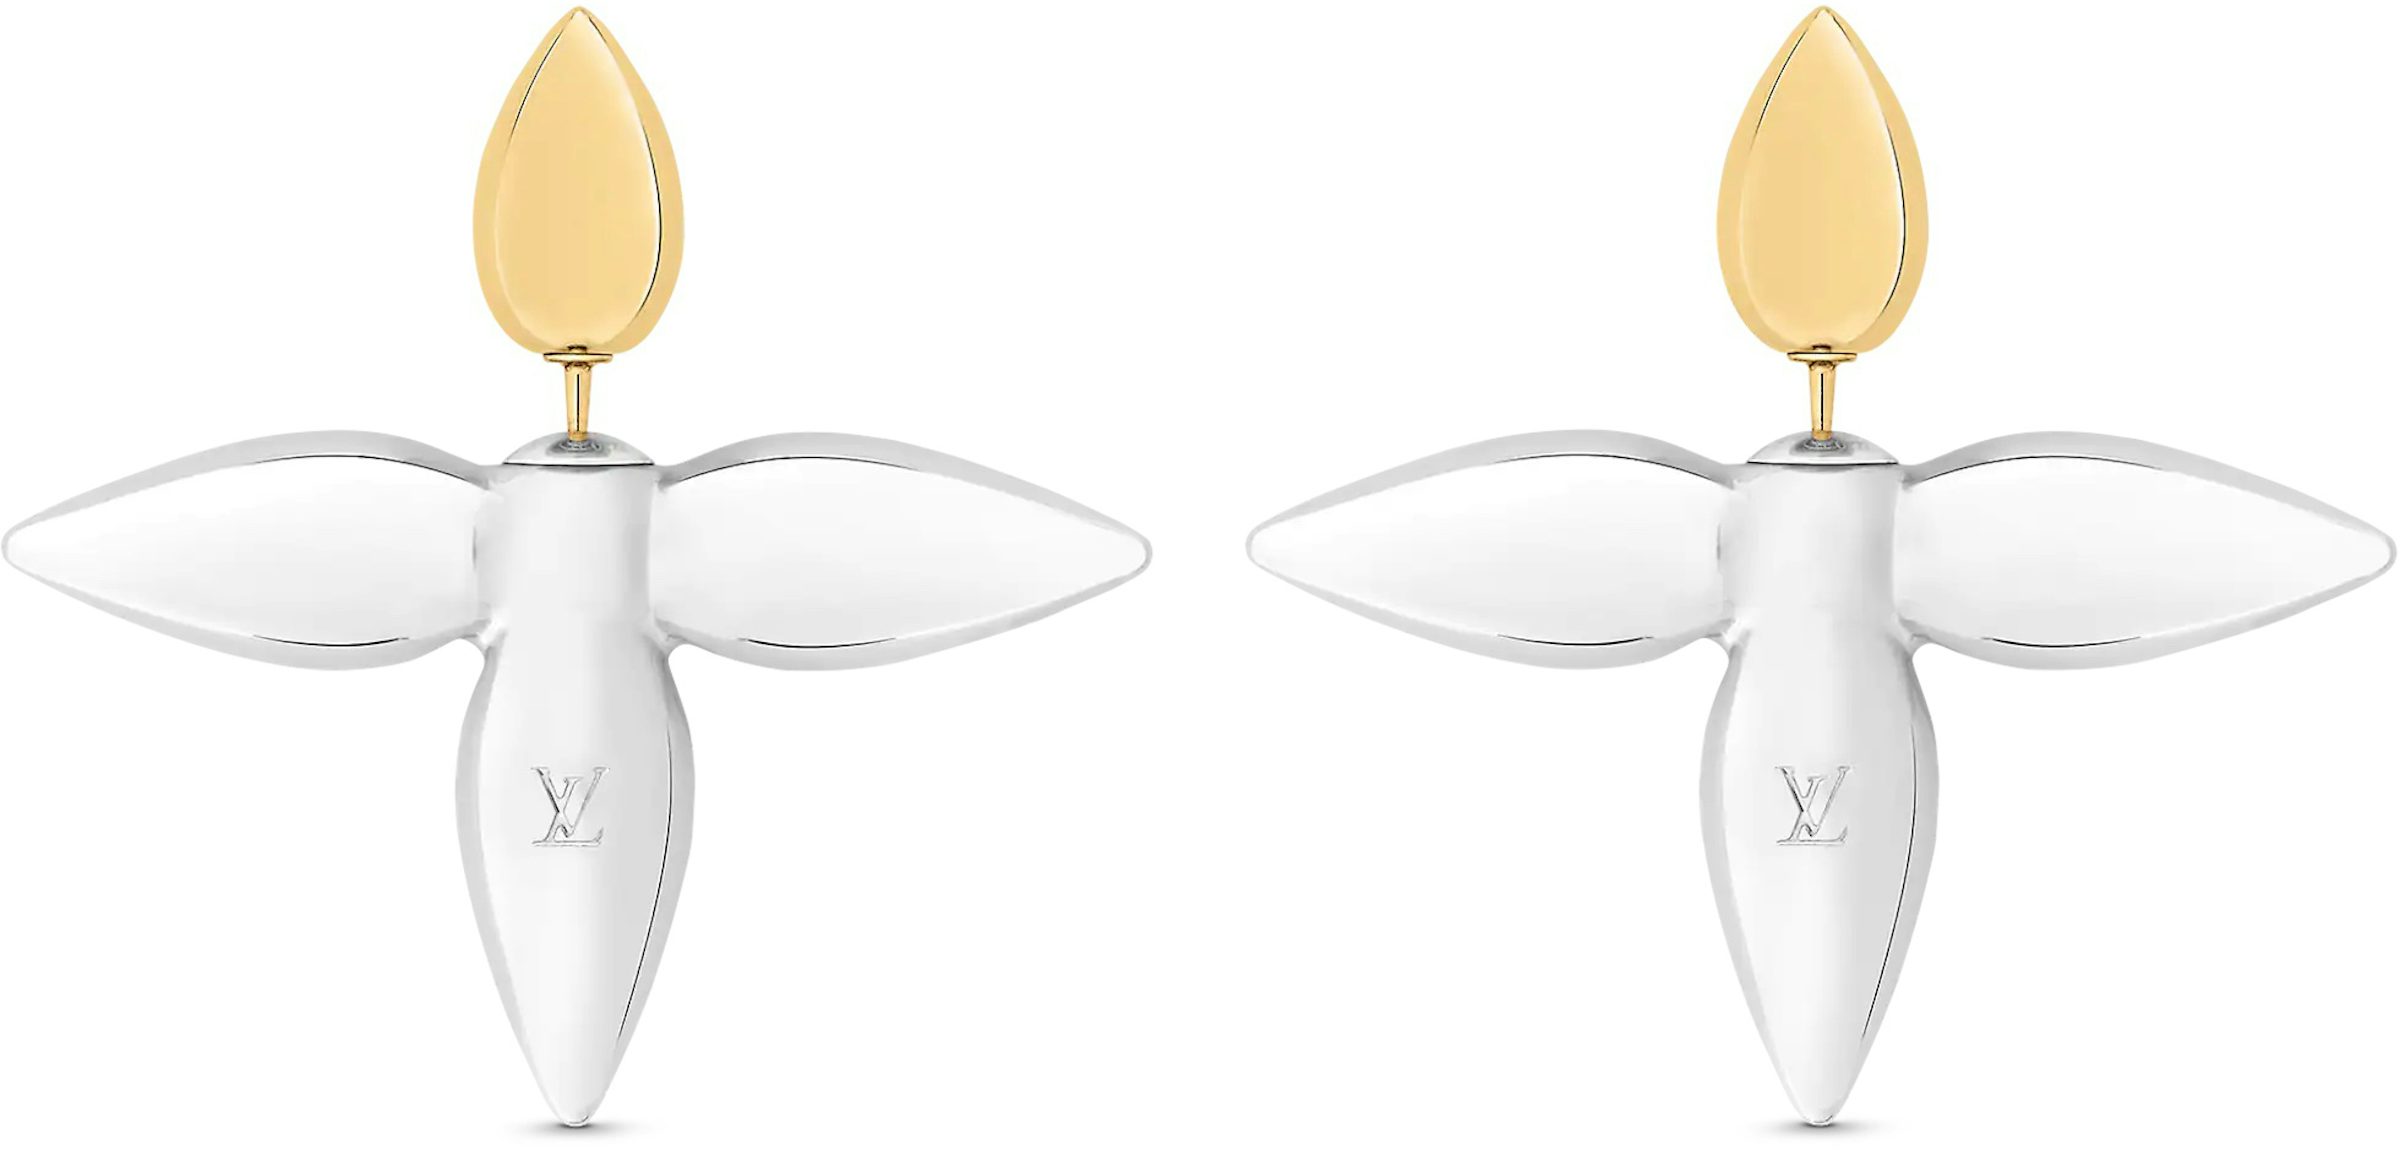 Louis Vuitton Louisette Macro Earrings Gold/Silver